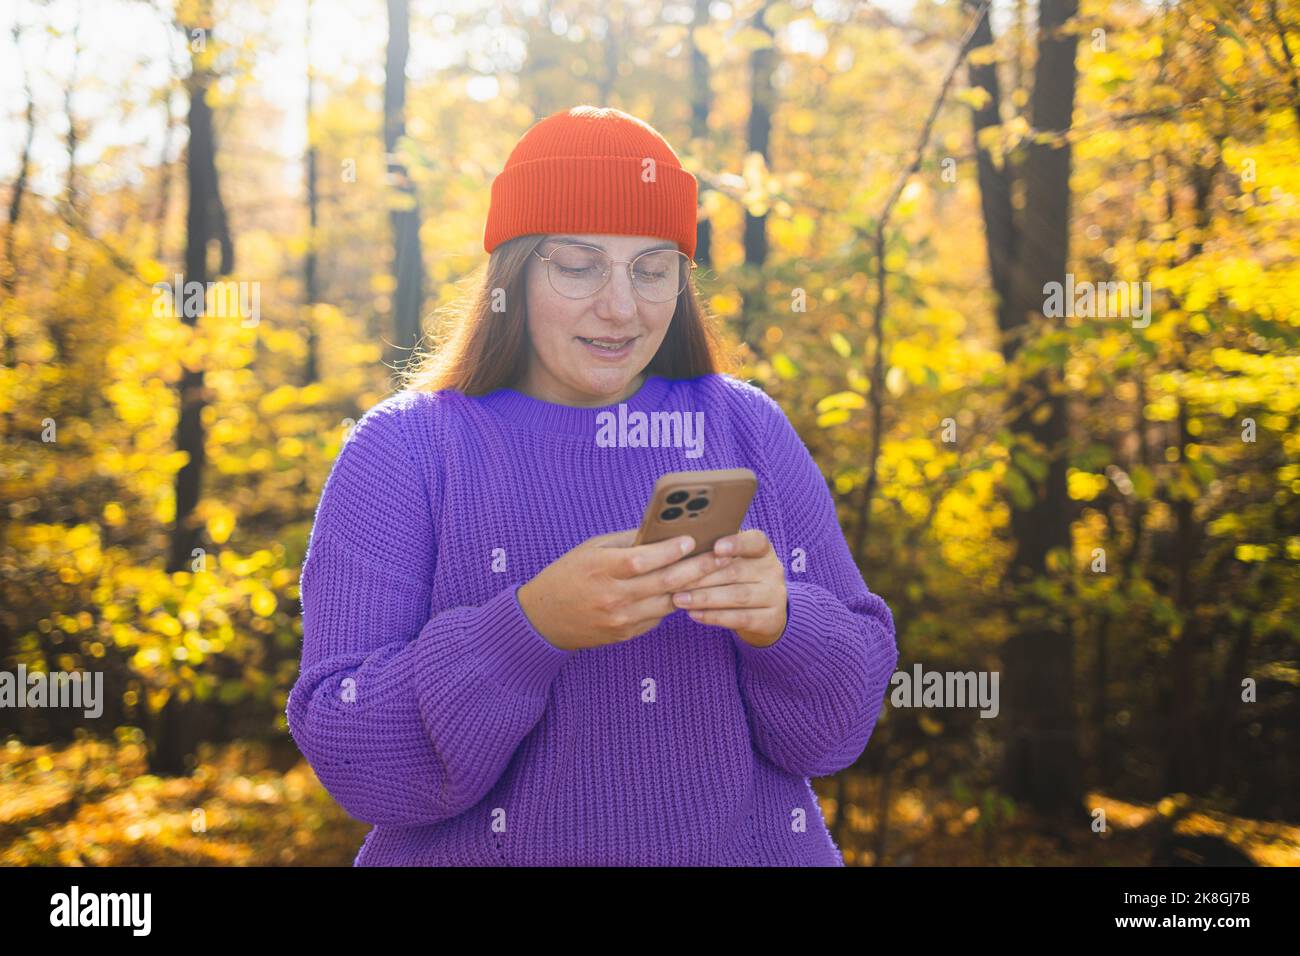 Allegro giovane ragazza bella e gioiosa che indossa abiti eleganti camminando nella foresta autunnale, guardando il telefono cellulare Foto Stock